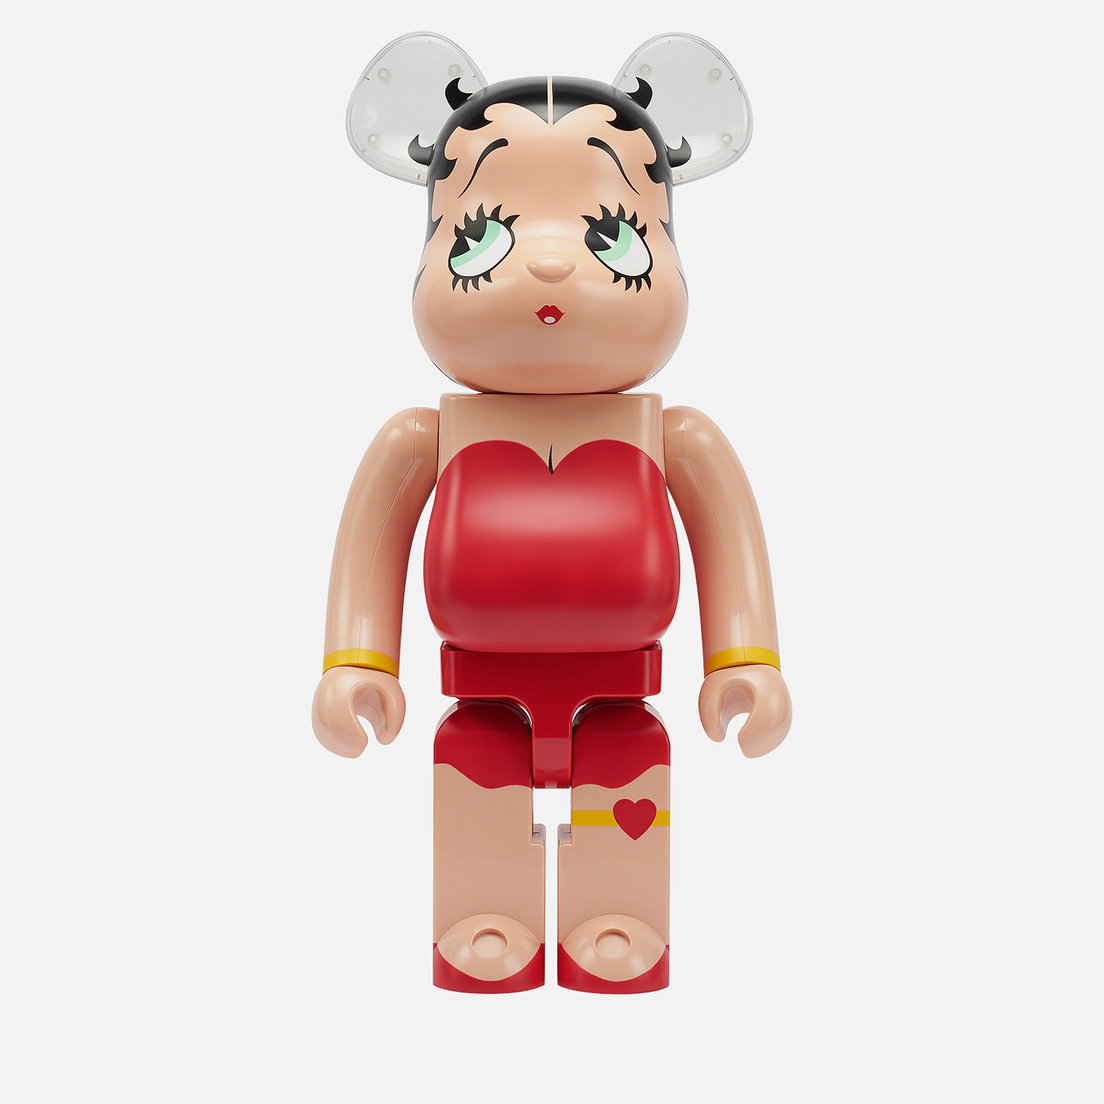 Medicom Toy Игрушка Betty Boop 1000%